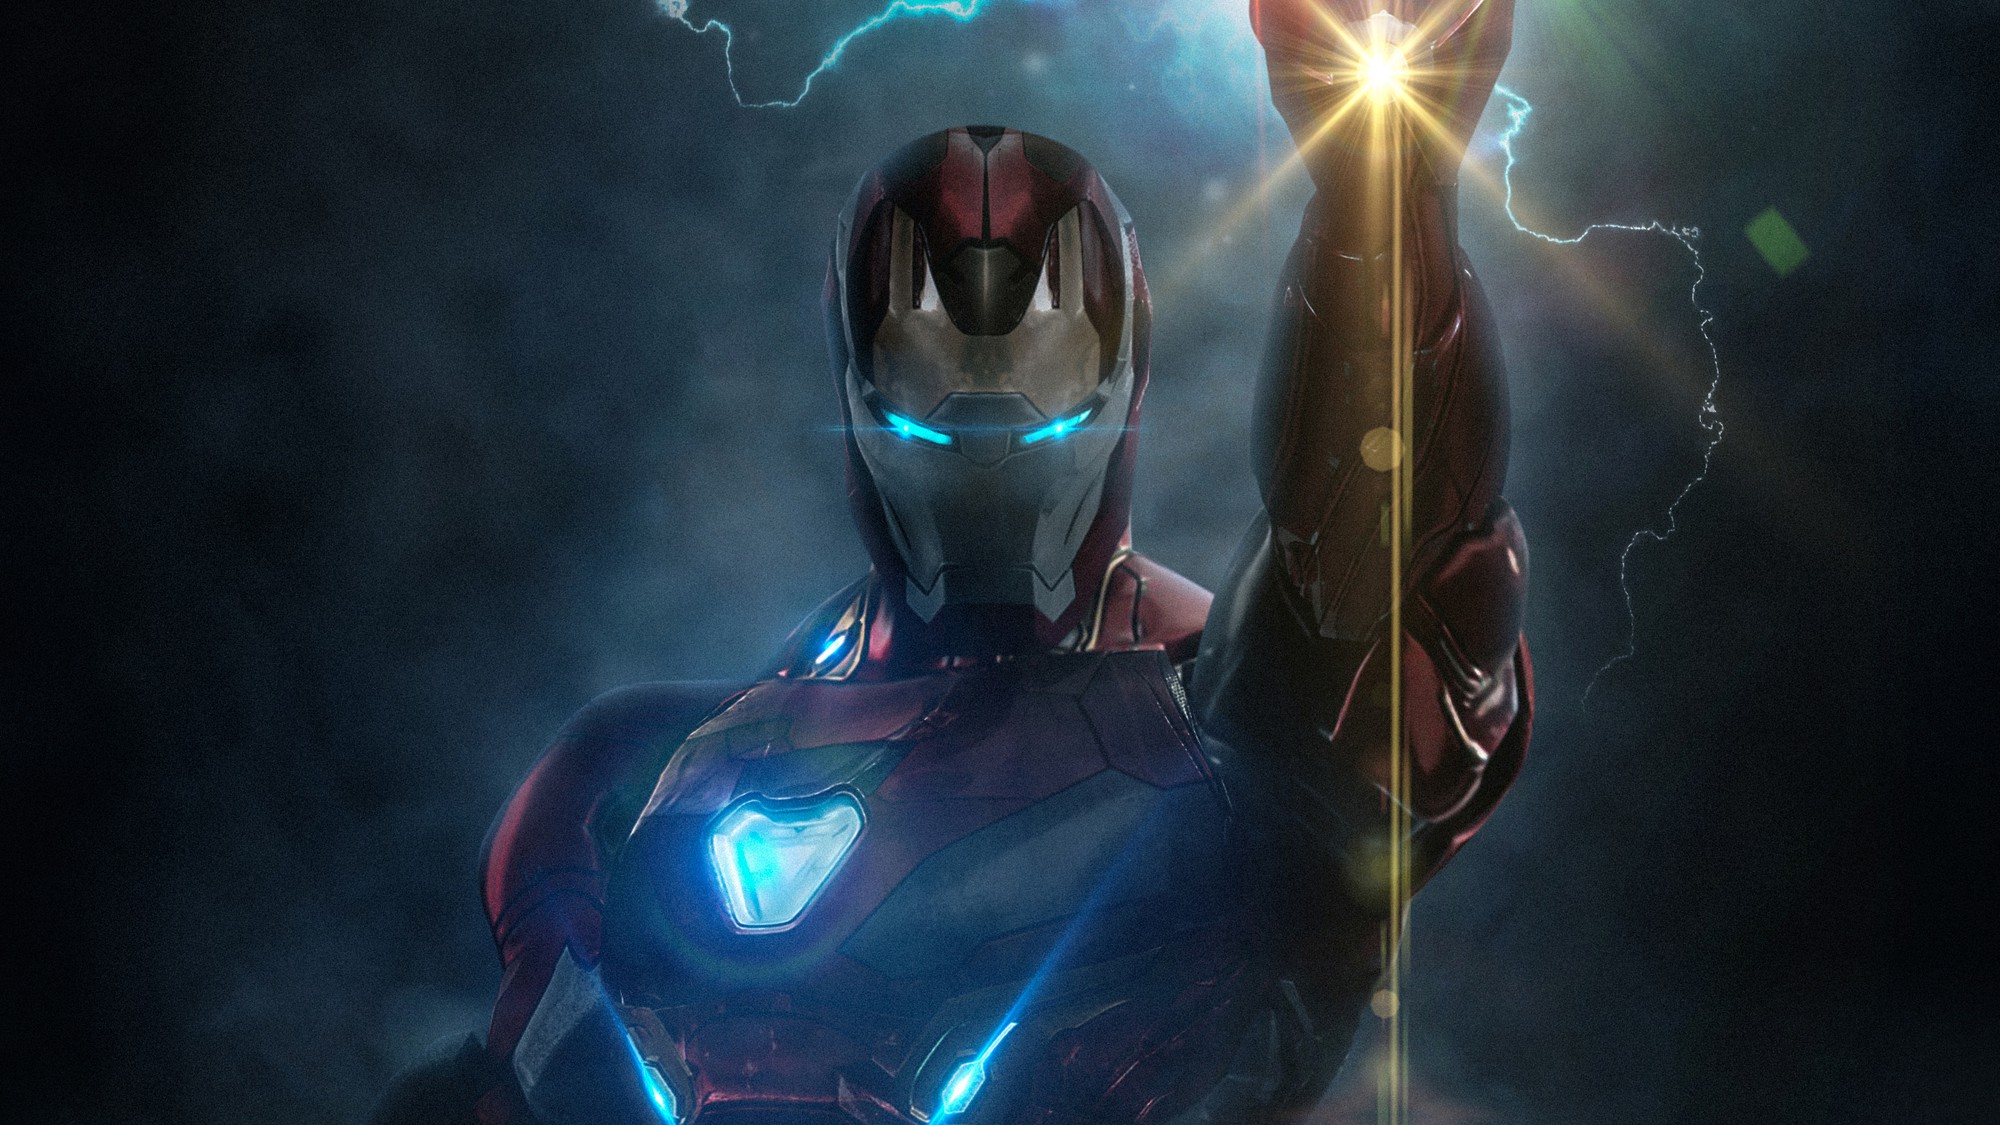 Thêm điều trăn trở hậu ENDGAME: Cái kết của Iron Man liệu có thật sự cần thiết? - Ảnh 2.